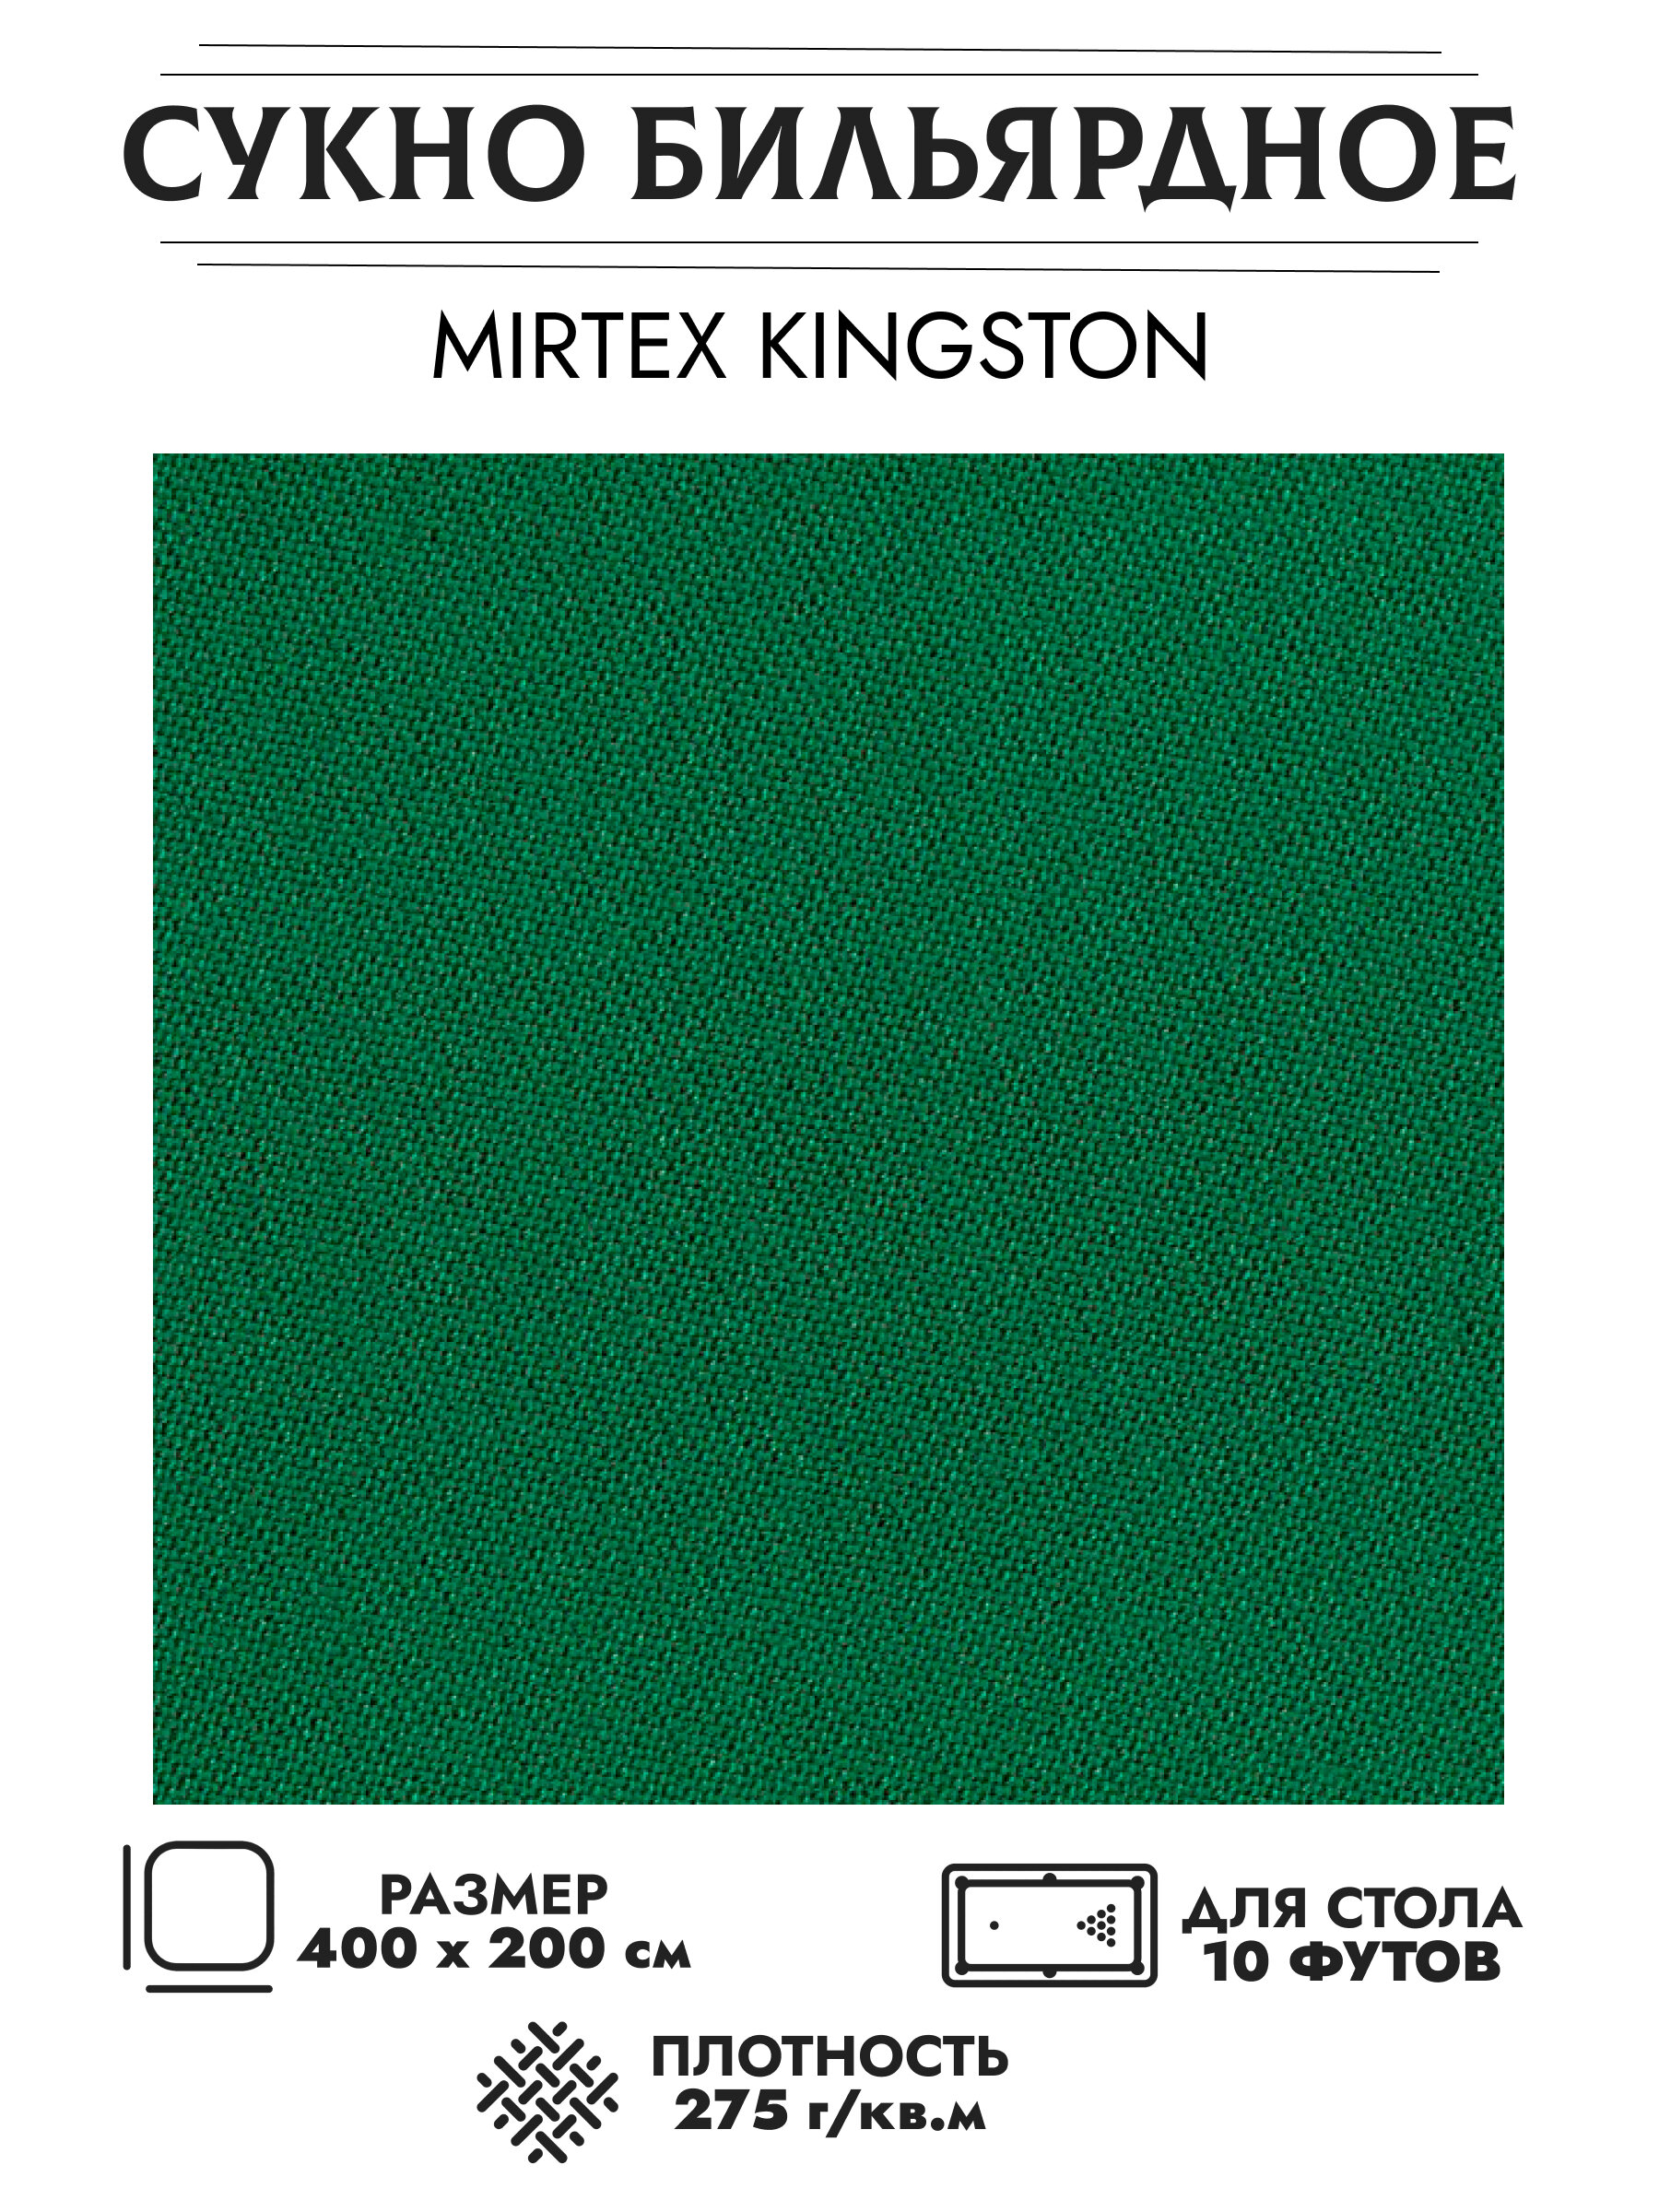 Mirtex Kingston бильярдное сукно для столов 10 футов (400 см х 200 см)